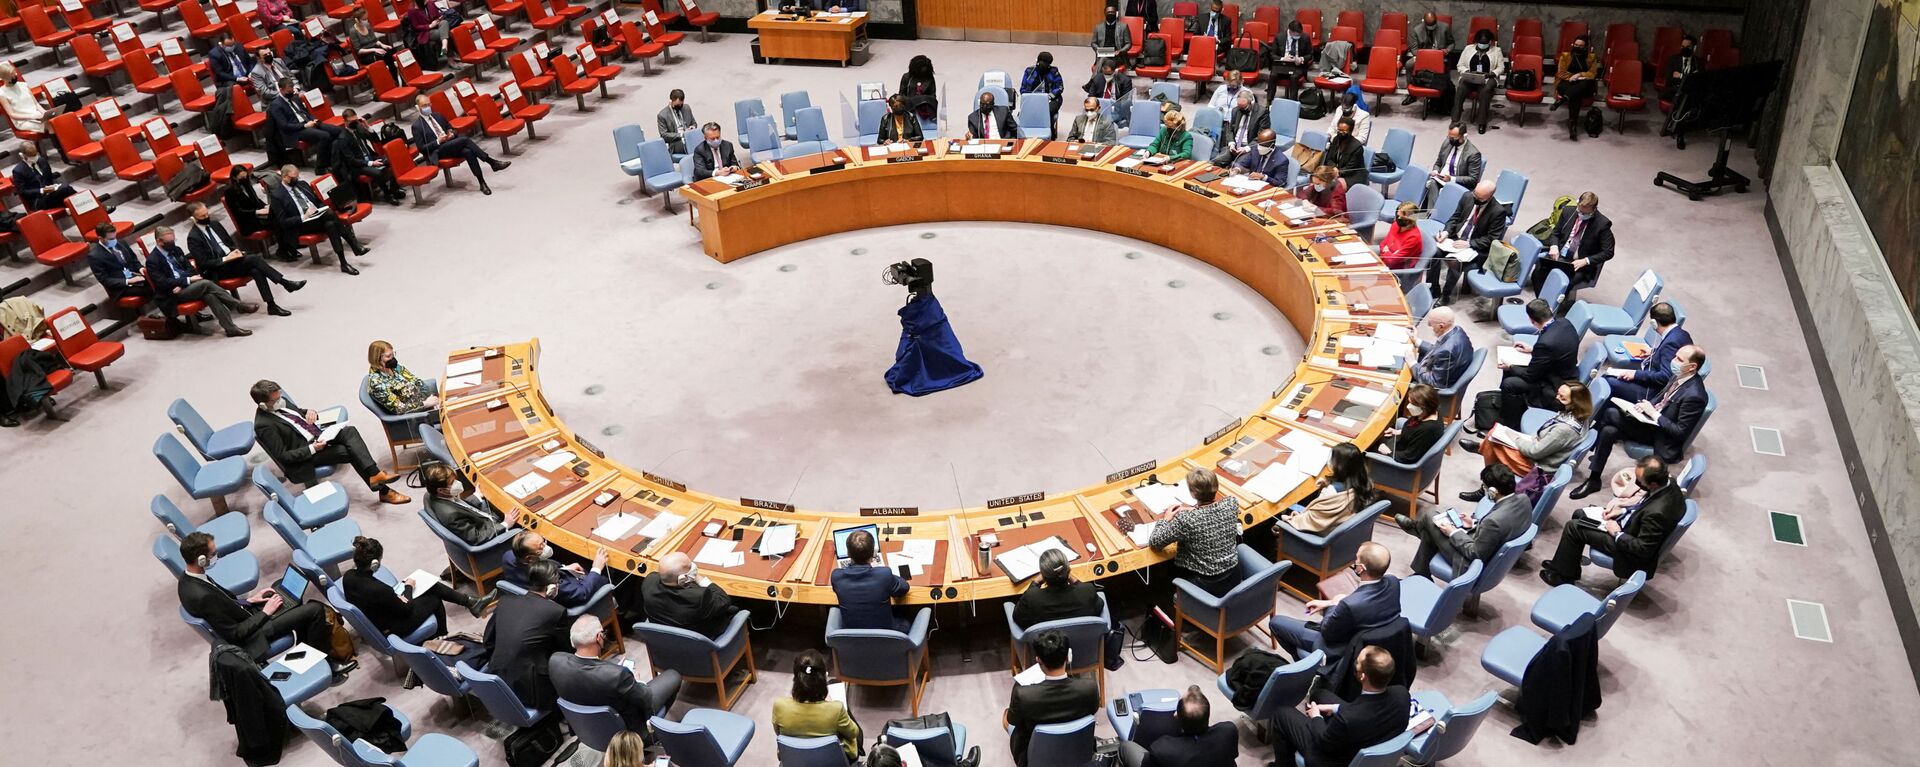  اجتماع مجلس الأمن التابع للأمم المتحدة بعد أن اعترفت روسيا بمنطقتين منفصلتين في شرق أوكرانيا ككيانين مستقلين، في مدينة نيويورك، الولايات المتحدة 21 فبراير 2022. - سبوتنيك عربي, 1920, 17.03.2022